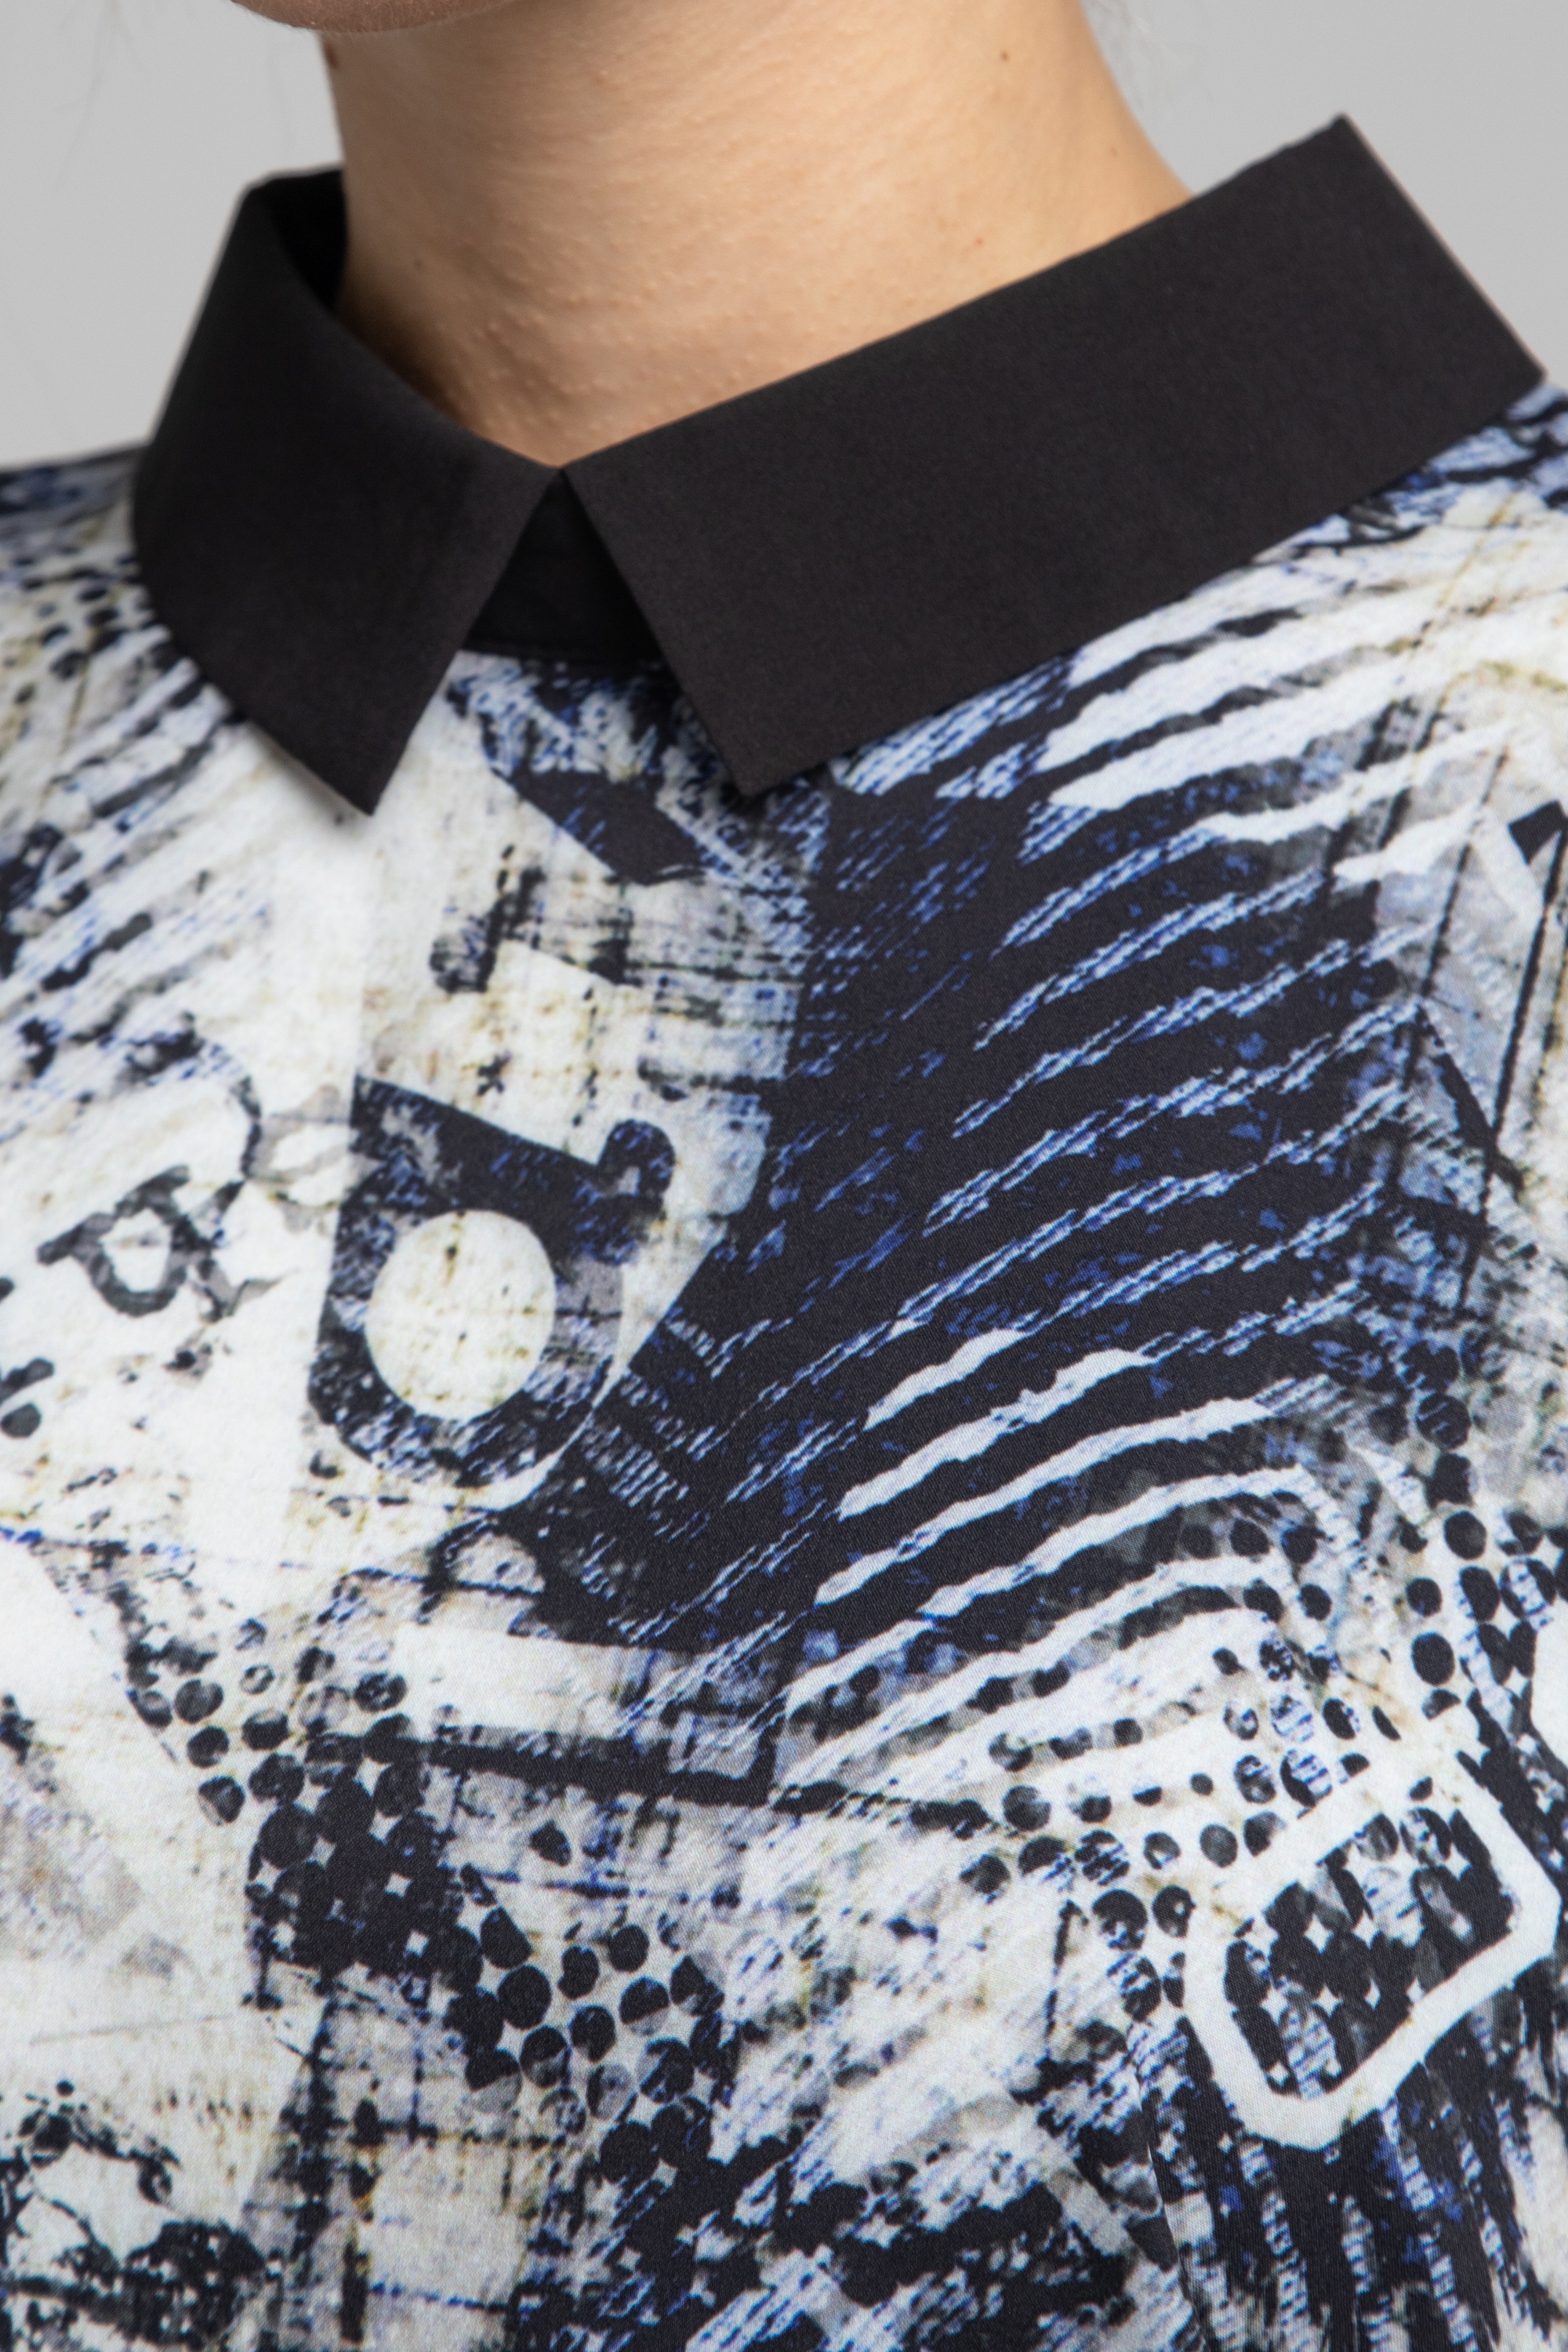 Блуза прямого силуэта с рукавами летучая мышь. 0030-01-27-44-111